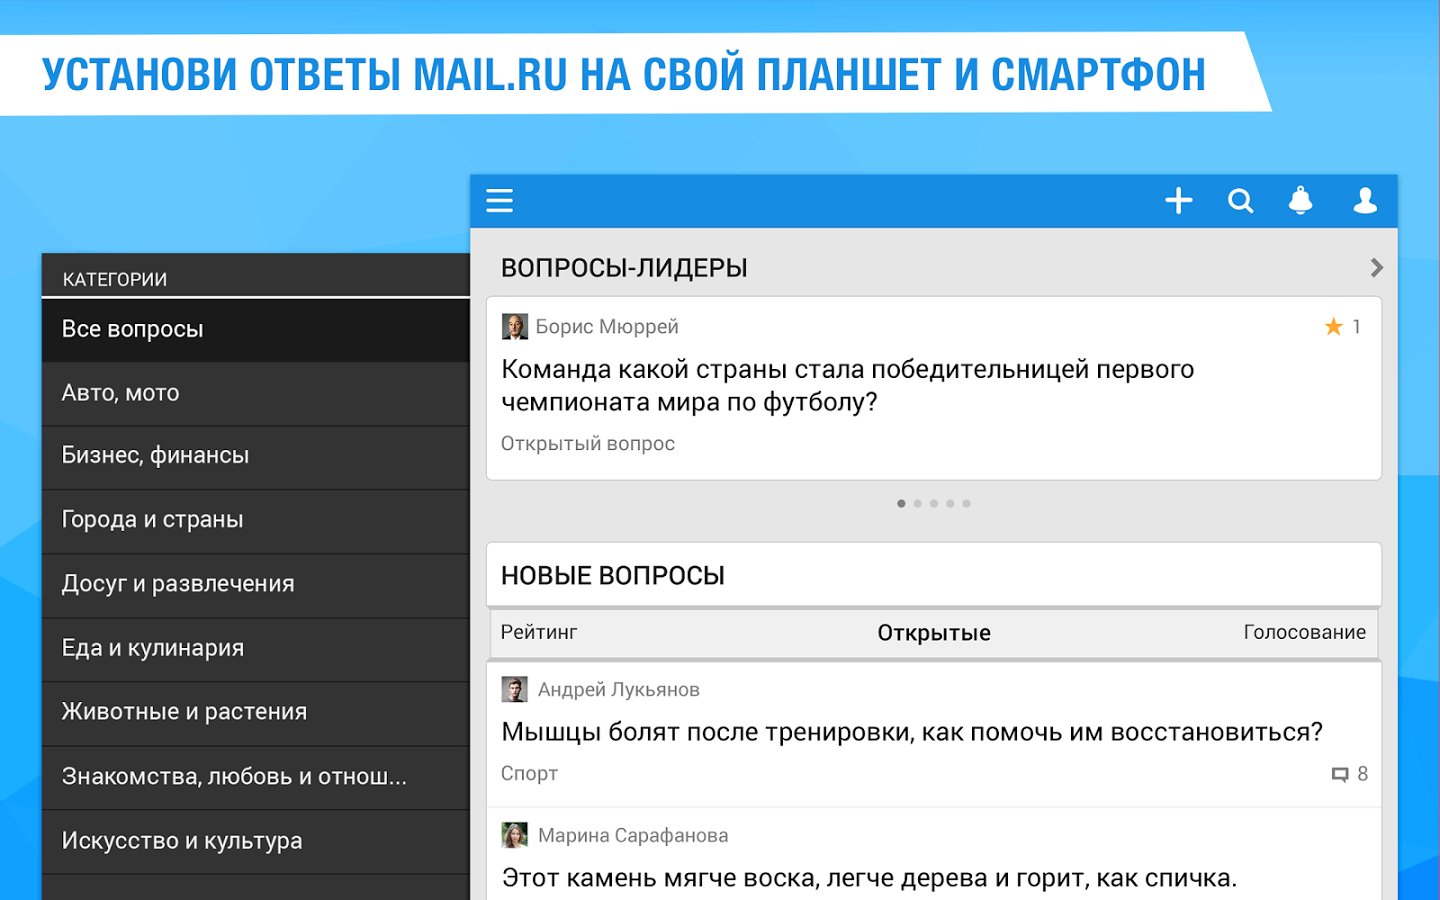 Ответы само ру. Ответы mail.ru. Маил ответы. Ответы майл. Майл ру ответы на вопросы.